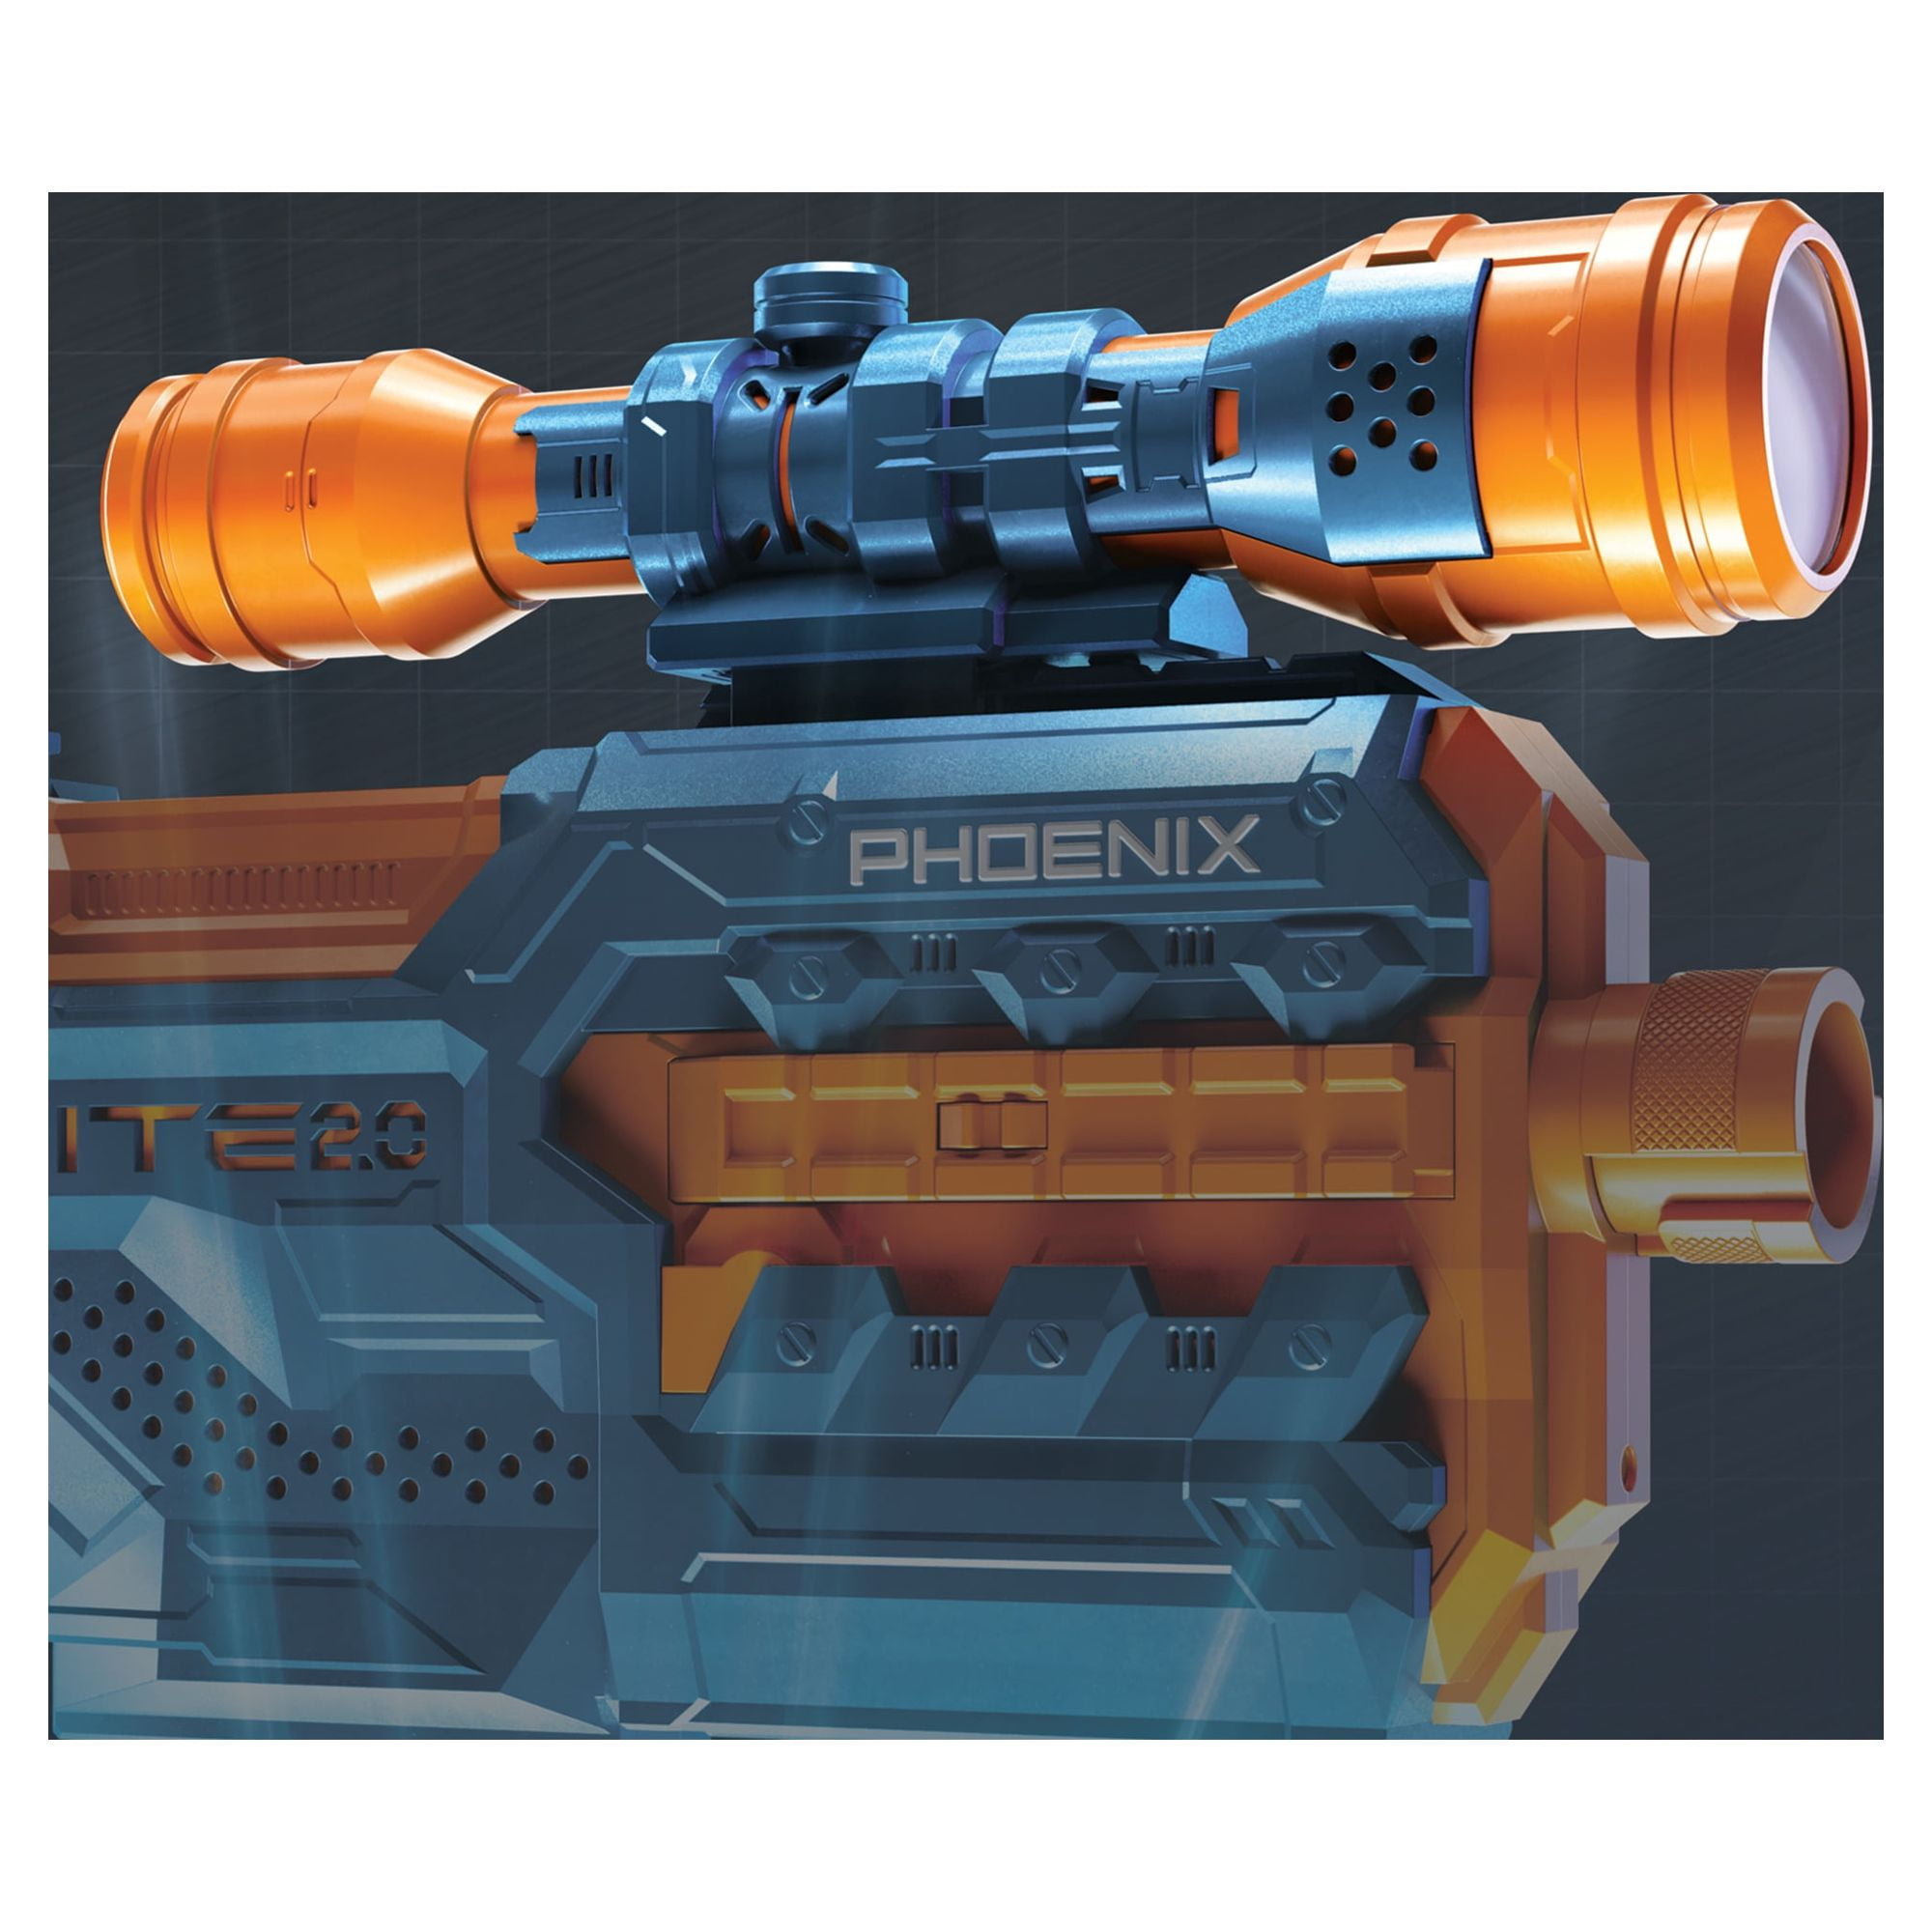 Nerf Elite 2.0 Star Phoenix CS-6